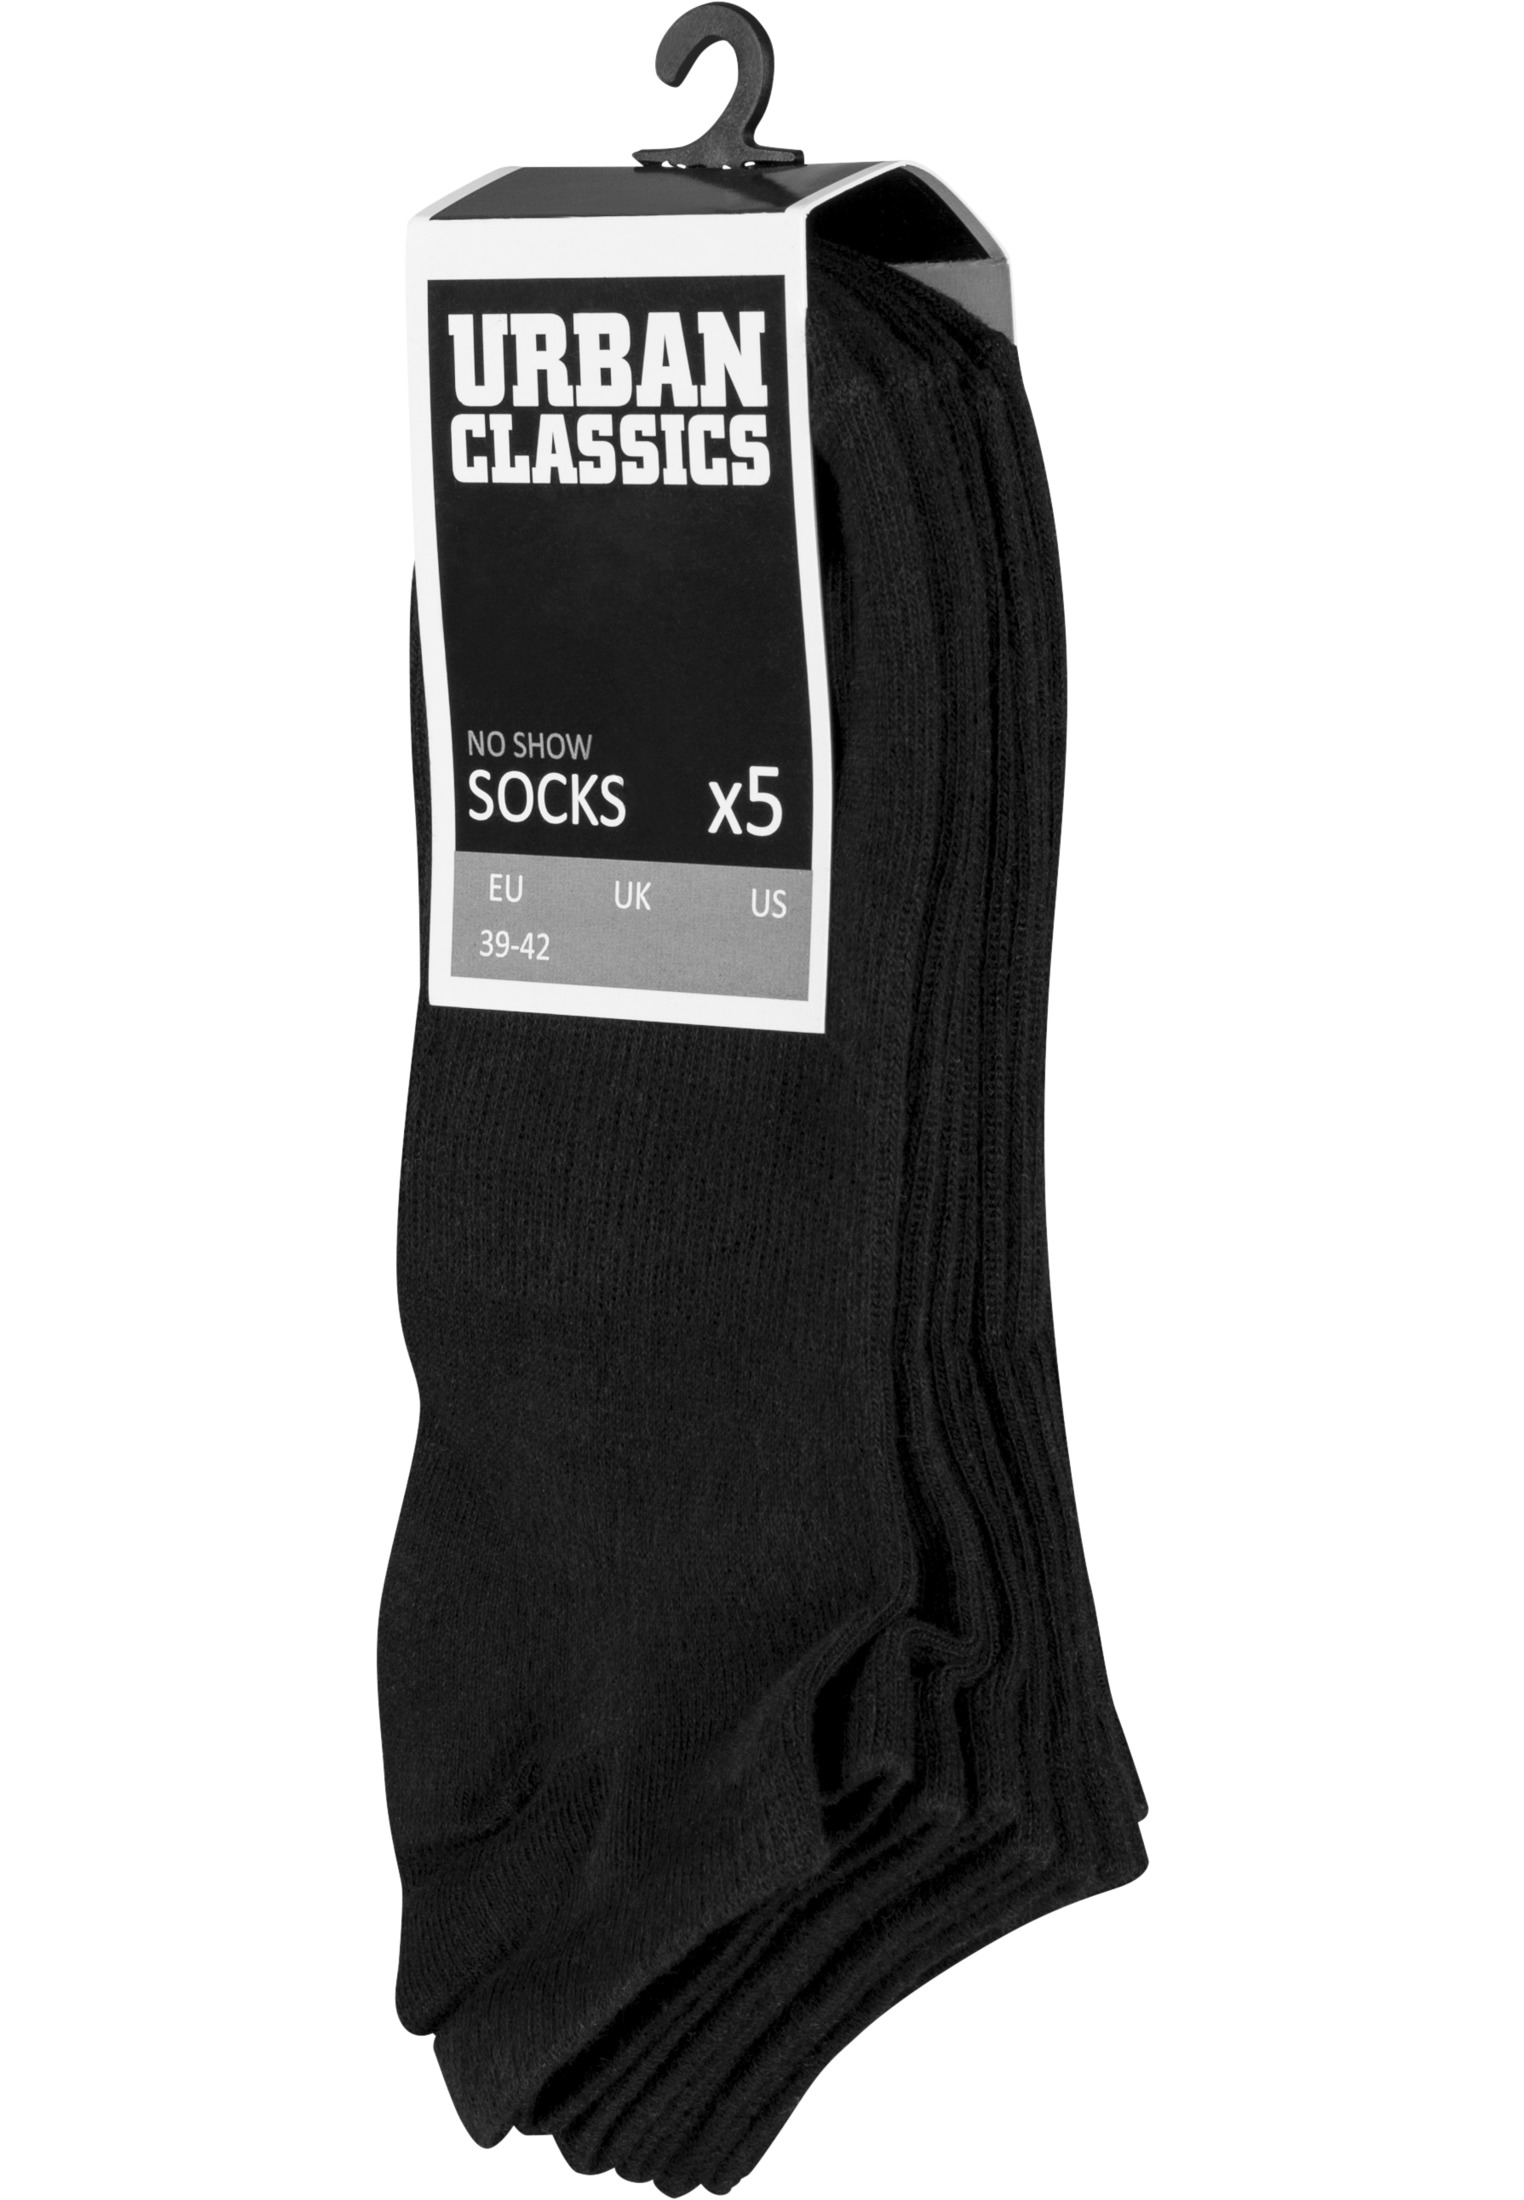 Socken No Show Socks 5-Pack in Farbe black